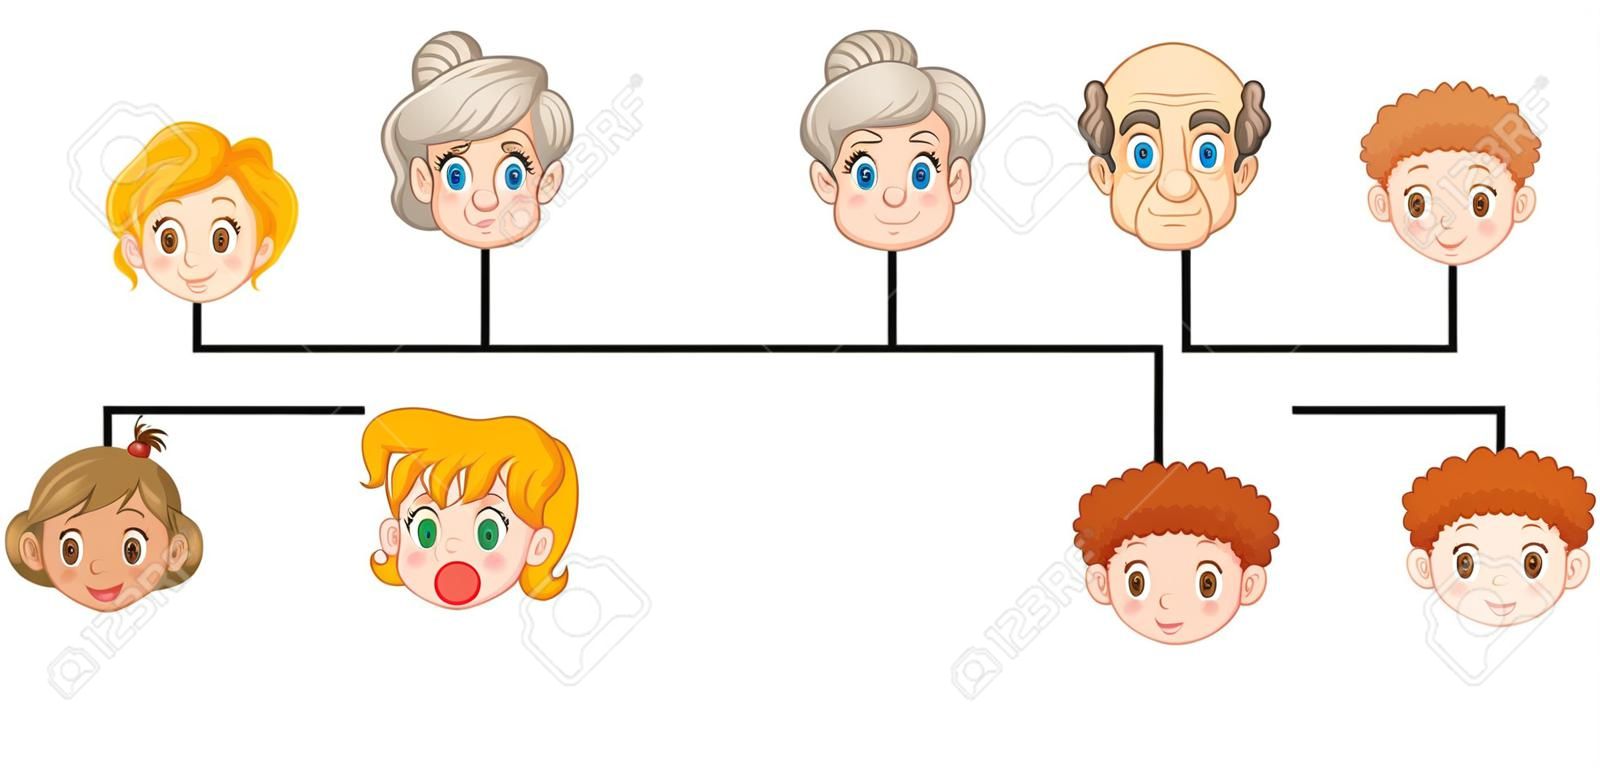 海報呈現出家族樹